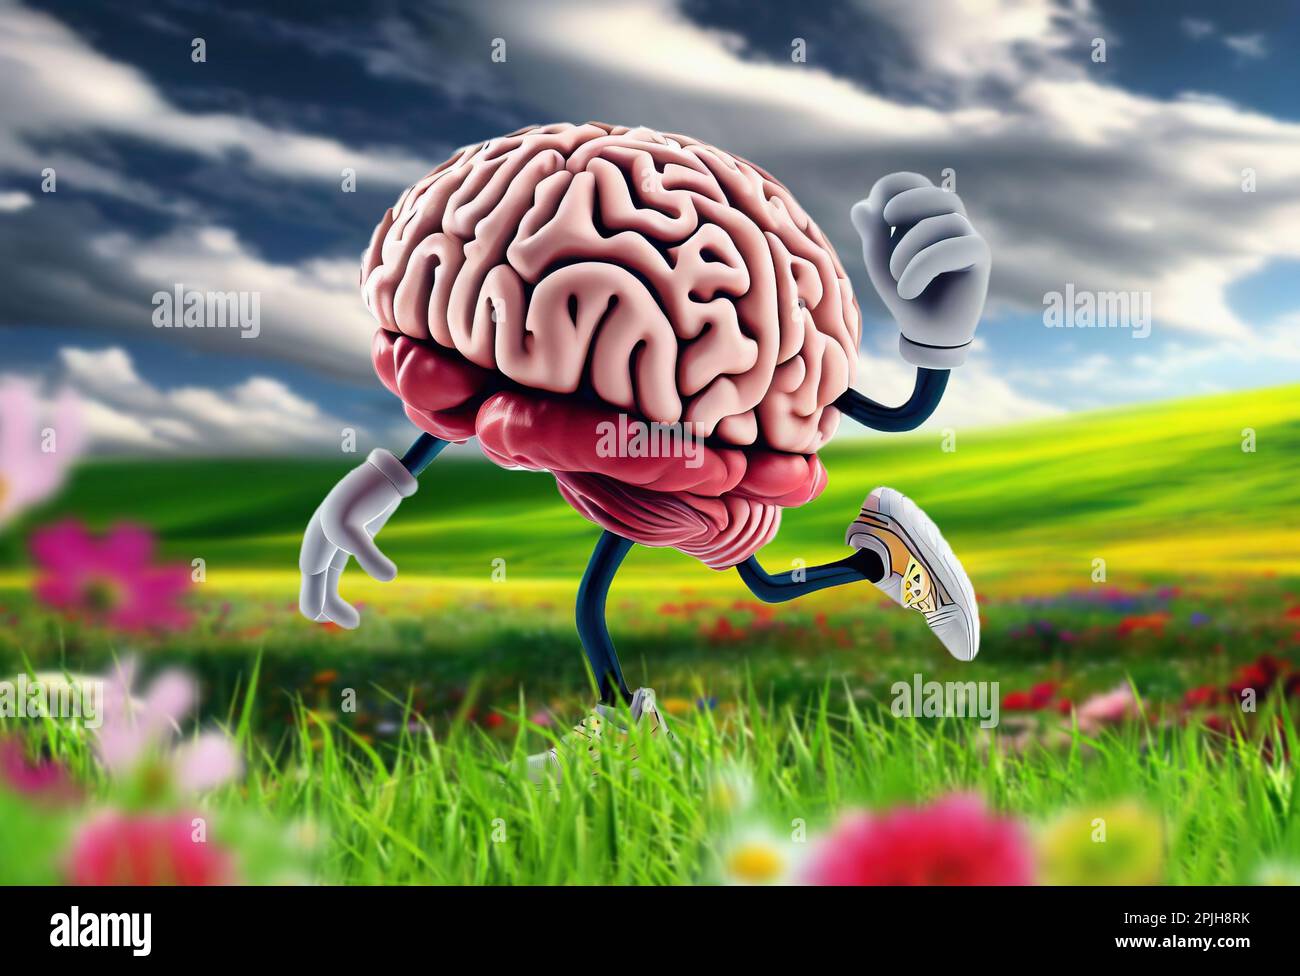 Entraînez votre cerveau, une image conceptuelle d'un jogging de cerveau dans une belle prairie. Banque D'Images